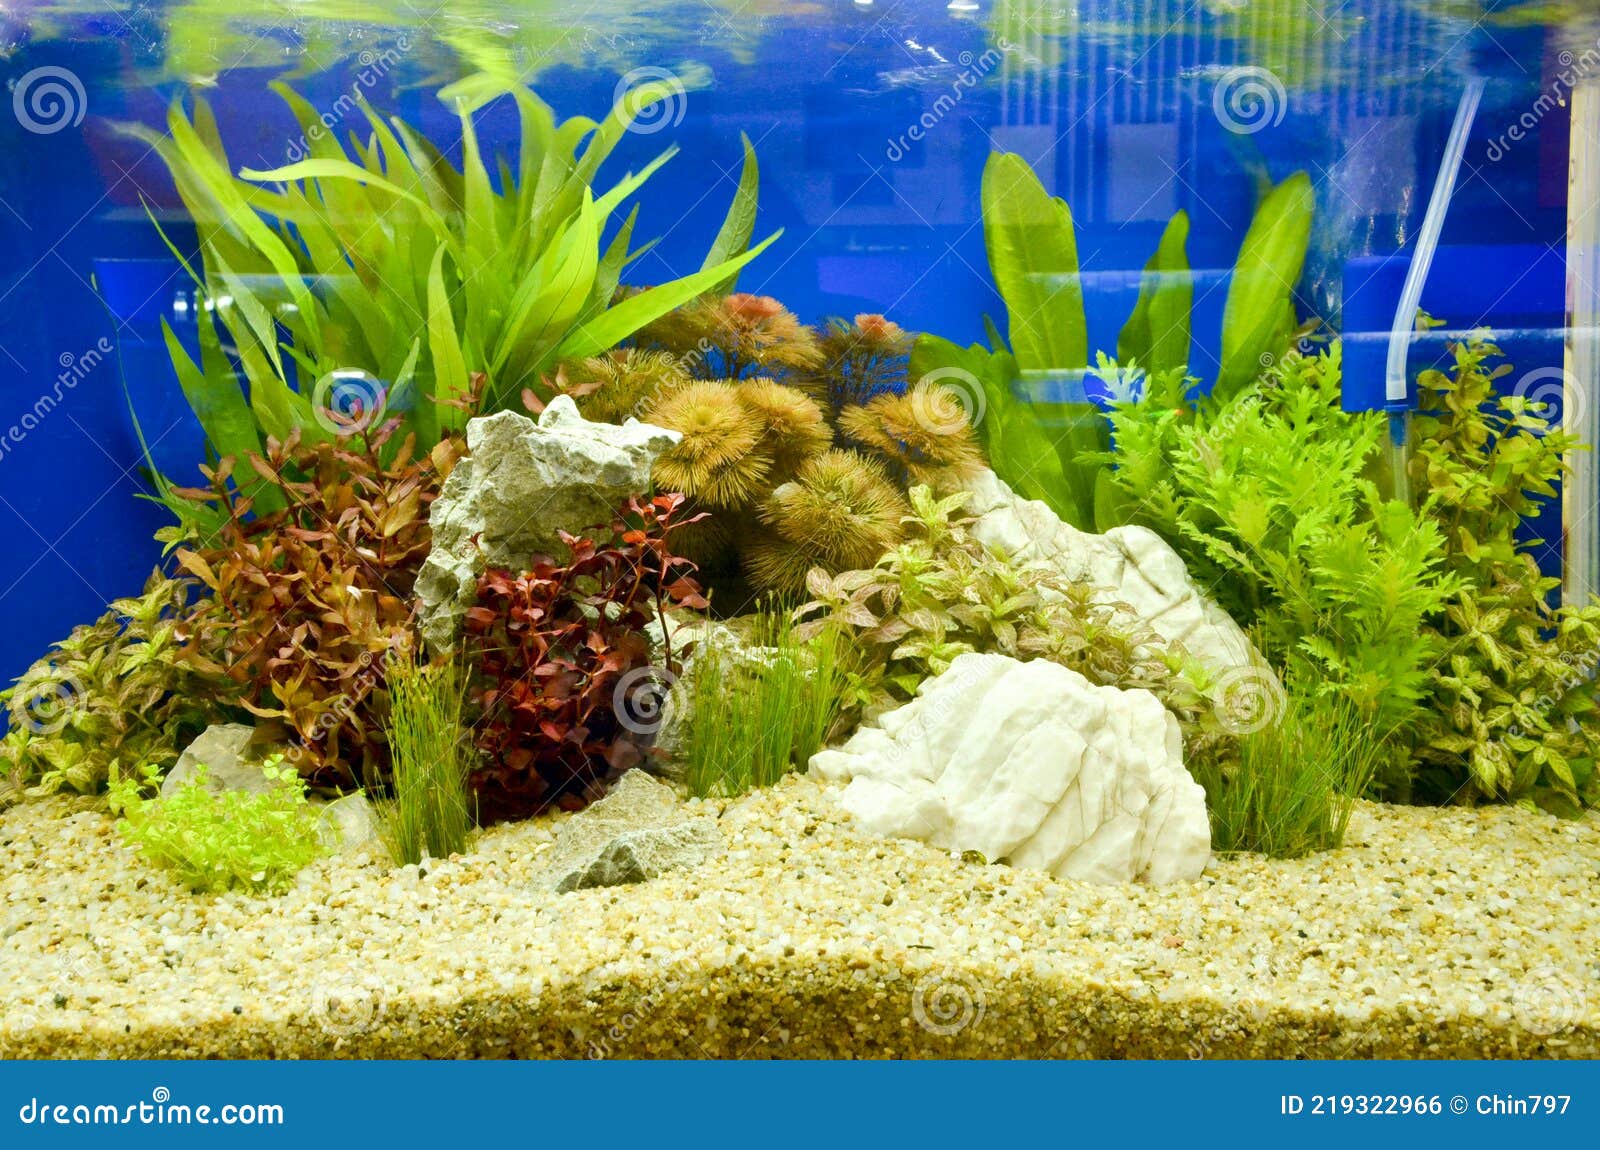 Aquarium Underwater Close Up Background Design Decorate Stock